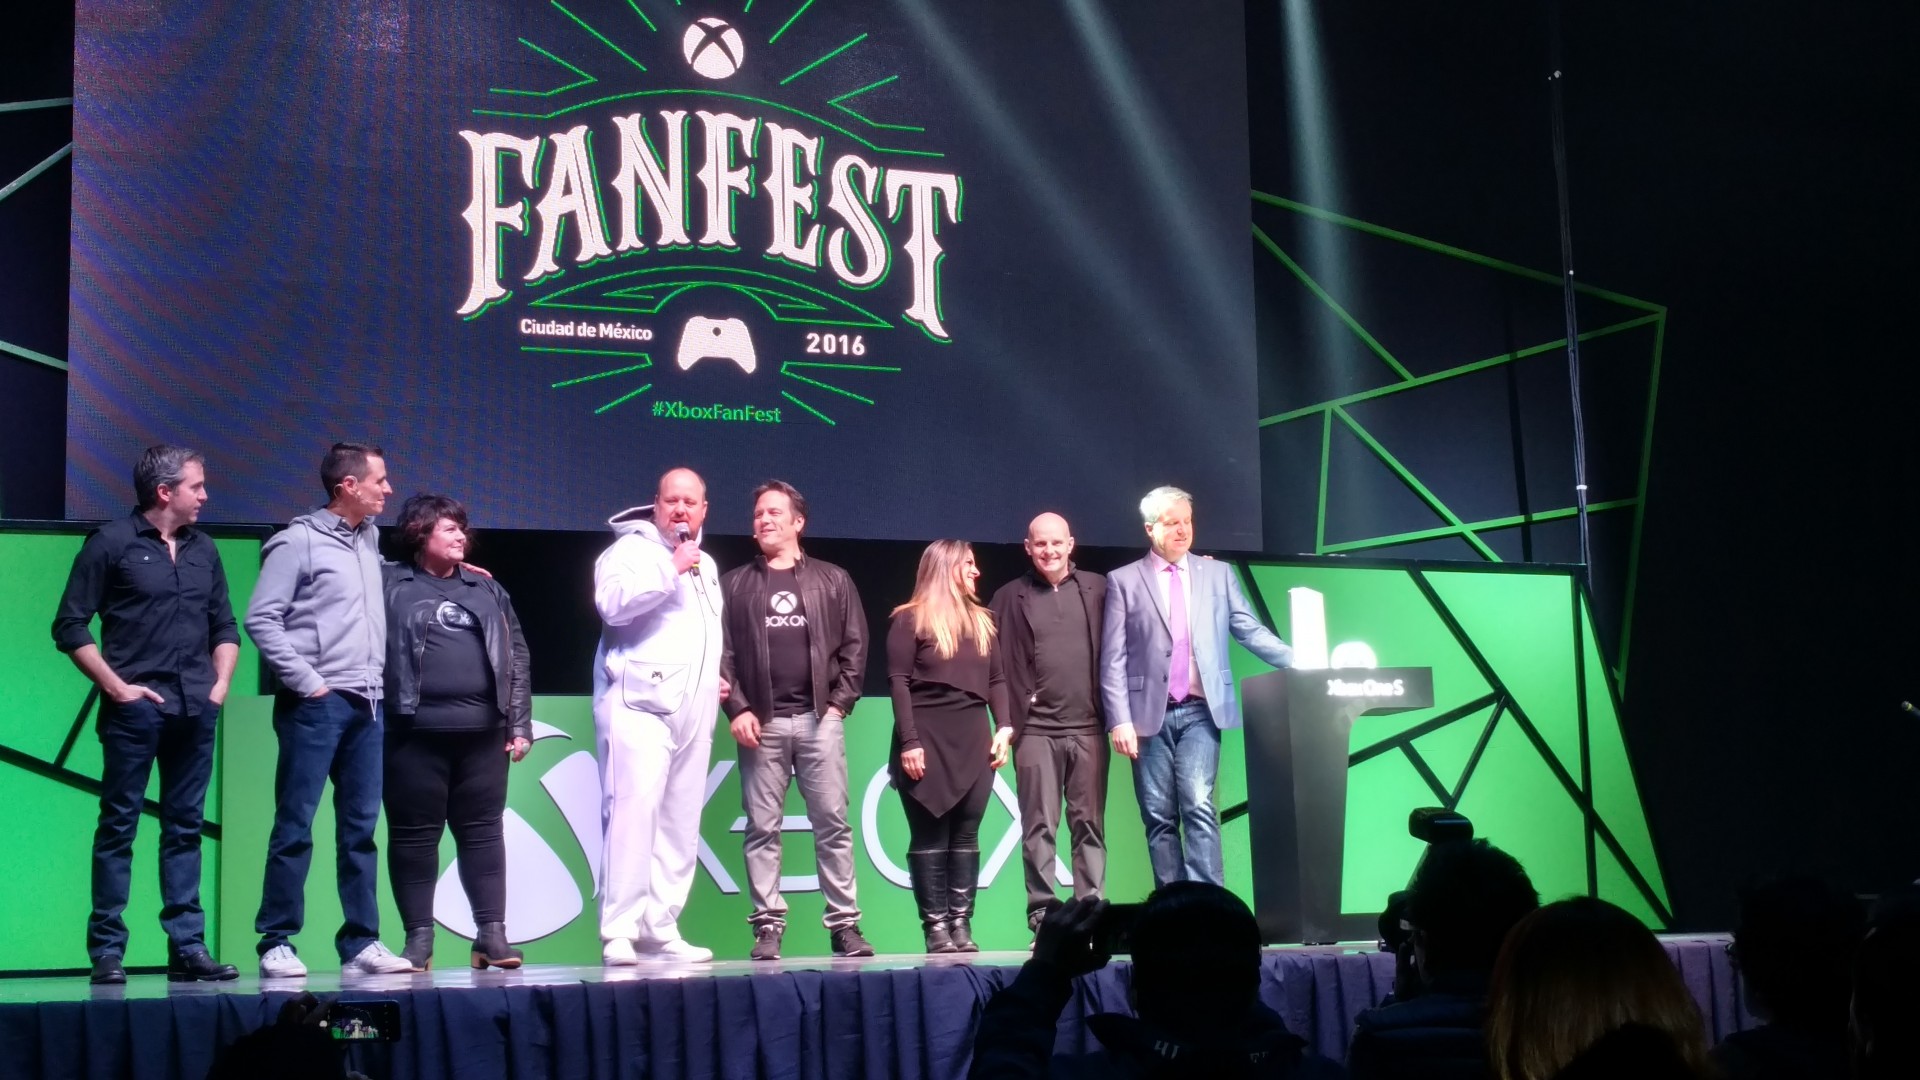 Qué novedades trajo la #XboxFanFest 2016